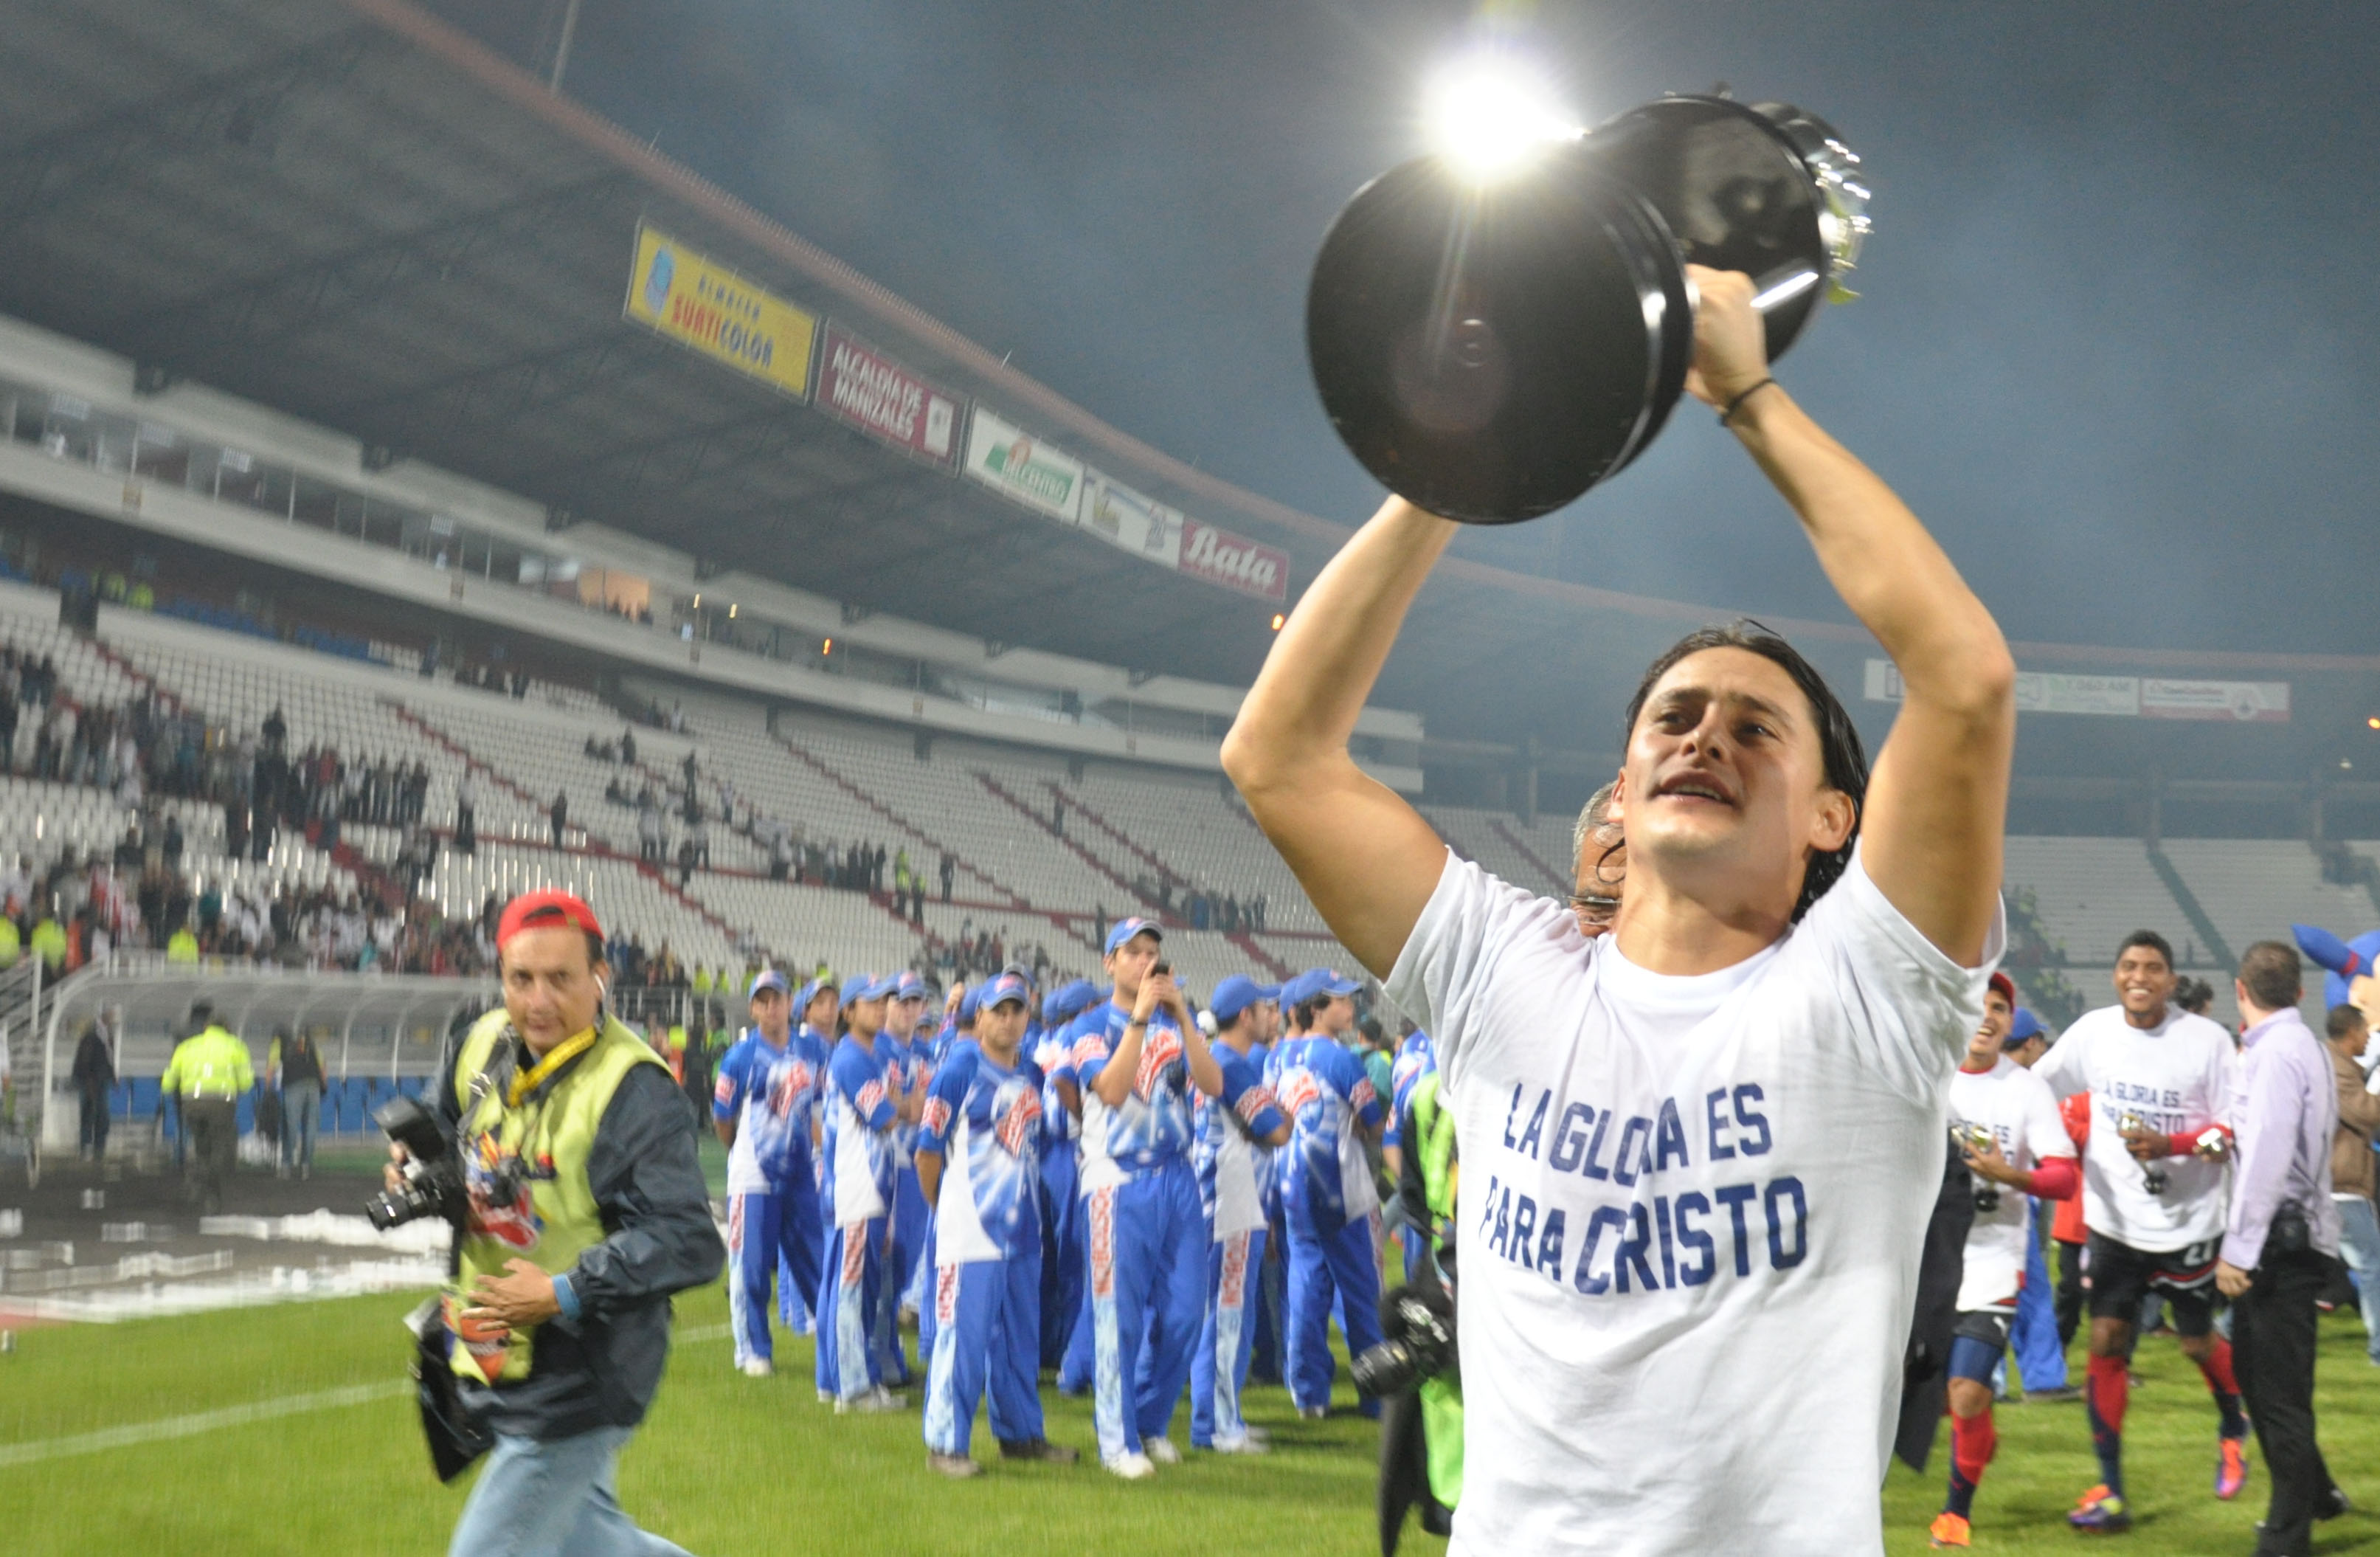 Giovanni festejando su segundo título de Liga con Junior, en Manizales (2011).